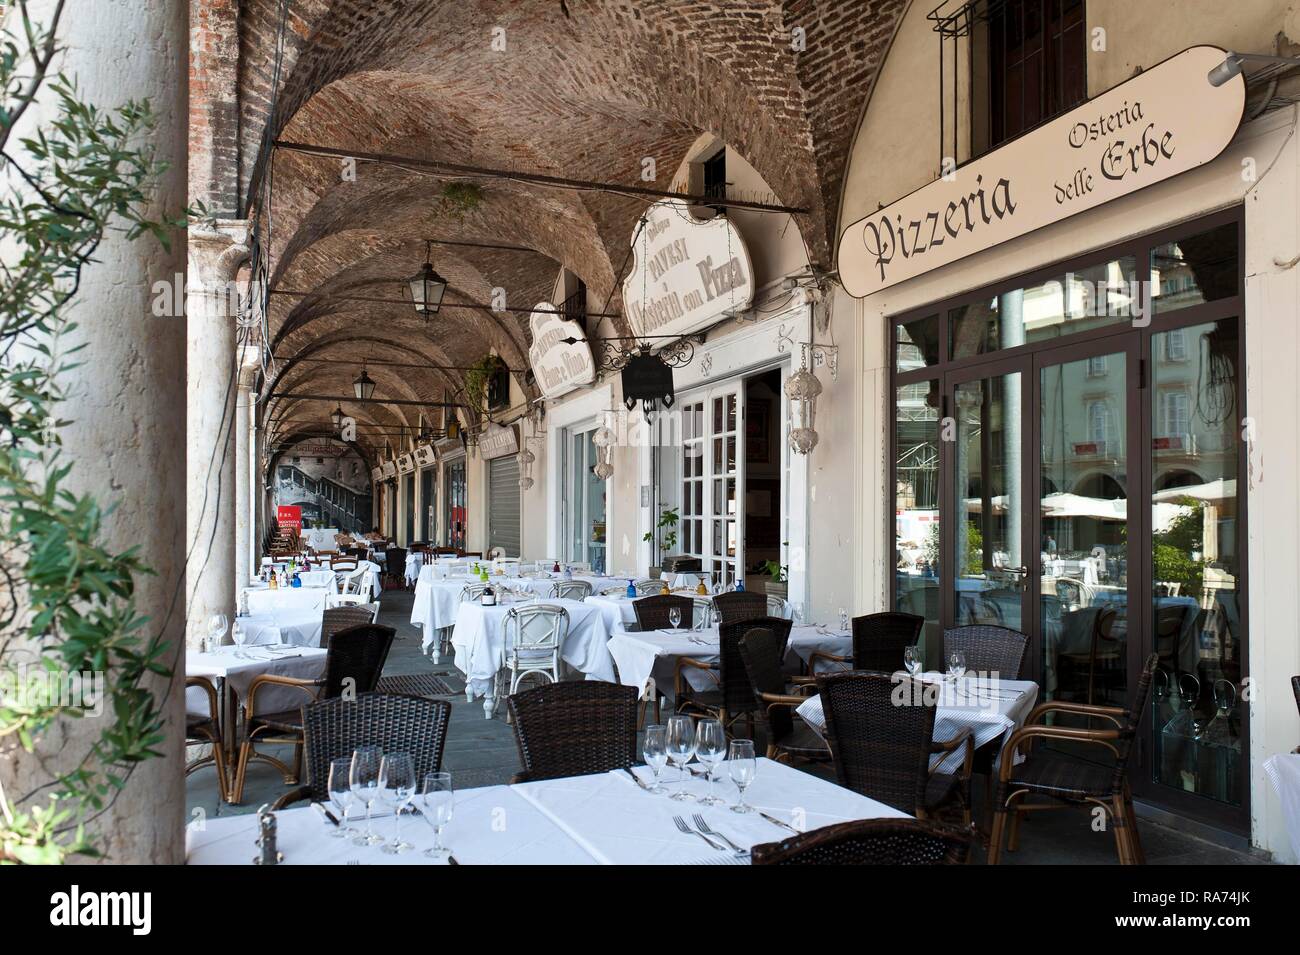 La gastronomía italiana, restaurante bajo las arcadas, pizzería Osteria delle Erbe, Mantua, Lombardía, Italia Foto de stock